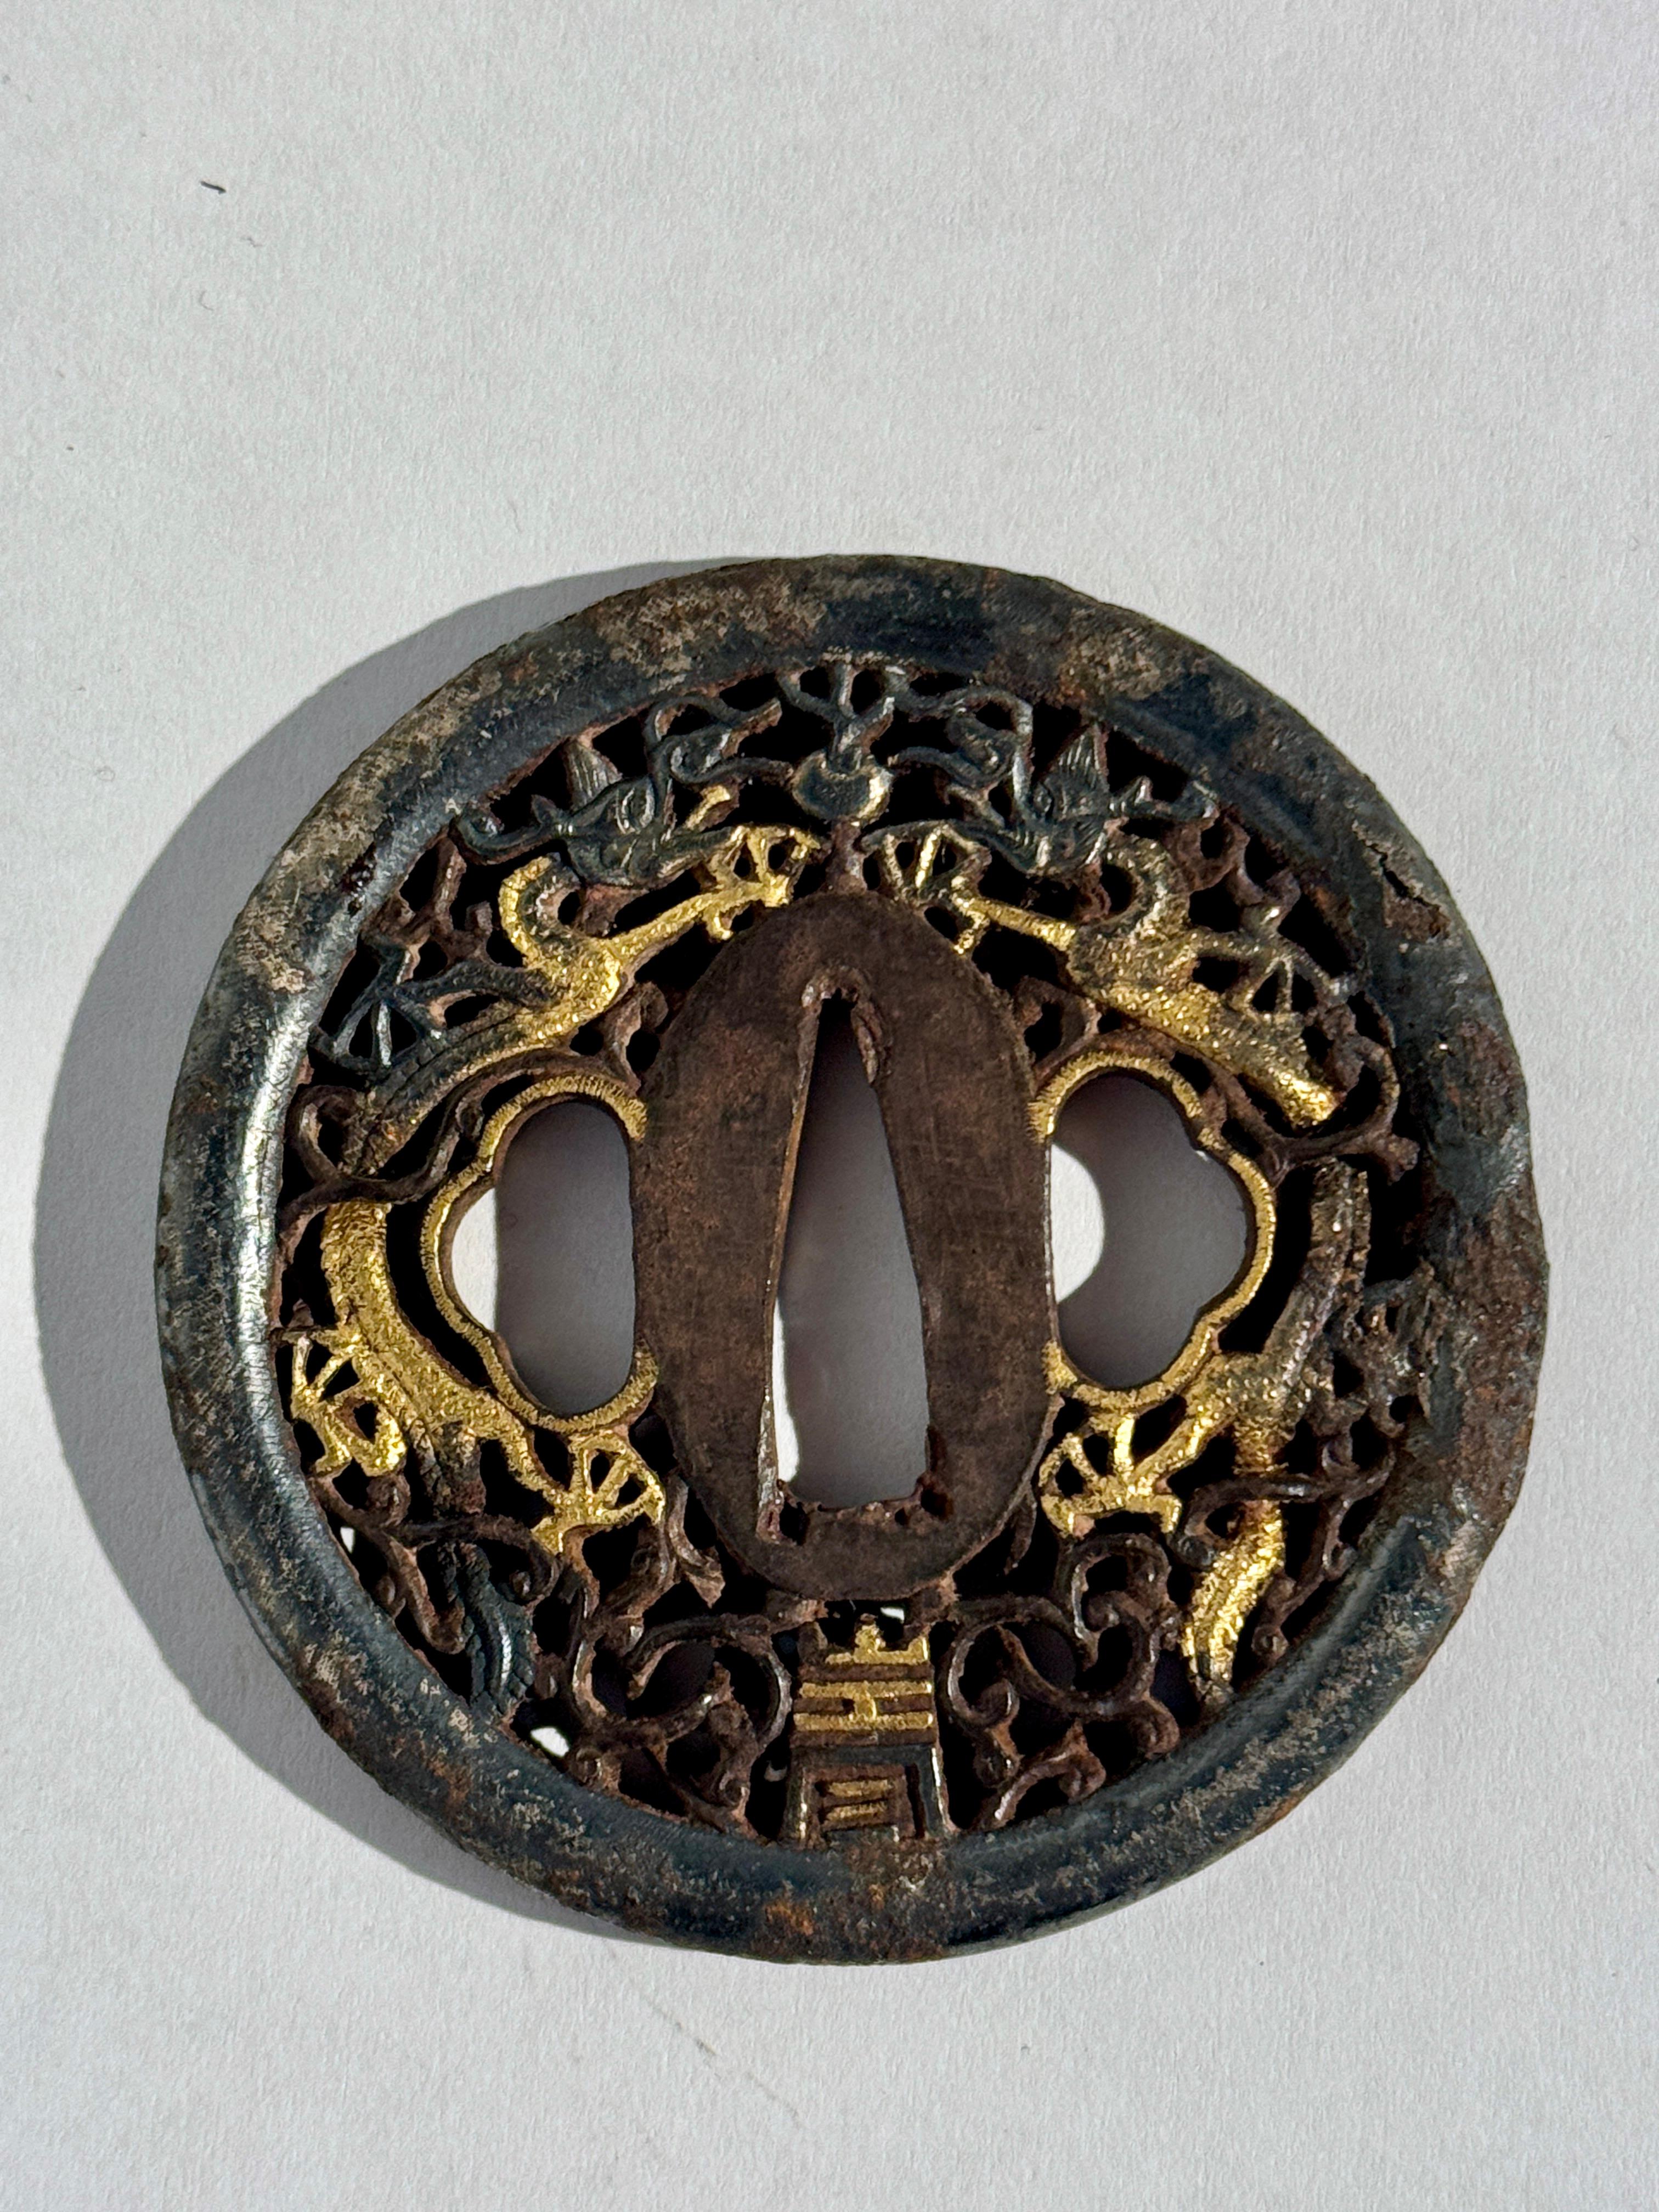 Eine dramatische japanische Eisentsuba im Nanban-Stil, verziert mit Drachen und Durchbrochenem, mit Silber- und Goldeinlagen, Edo-Periode, frühes 19.

Die fantastische Tsuba in runder Form zeigt ein Paar schreibender Drachen, die einen flammenden